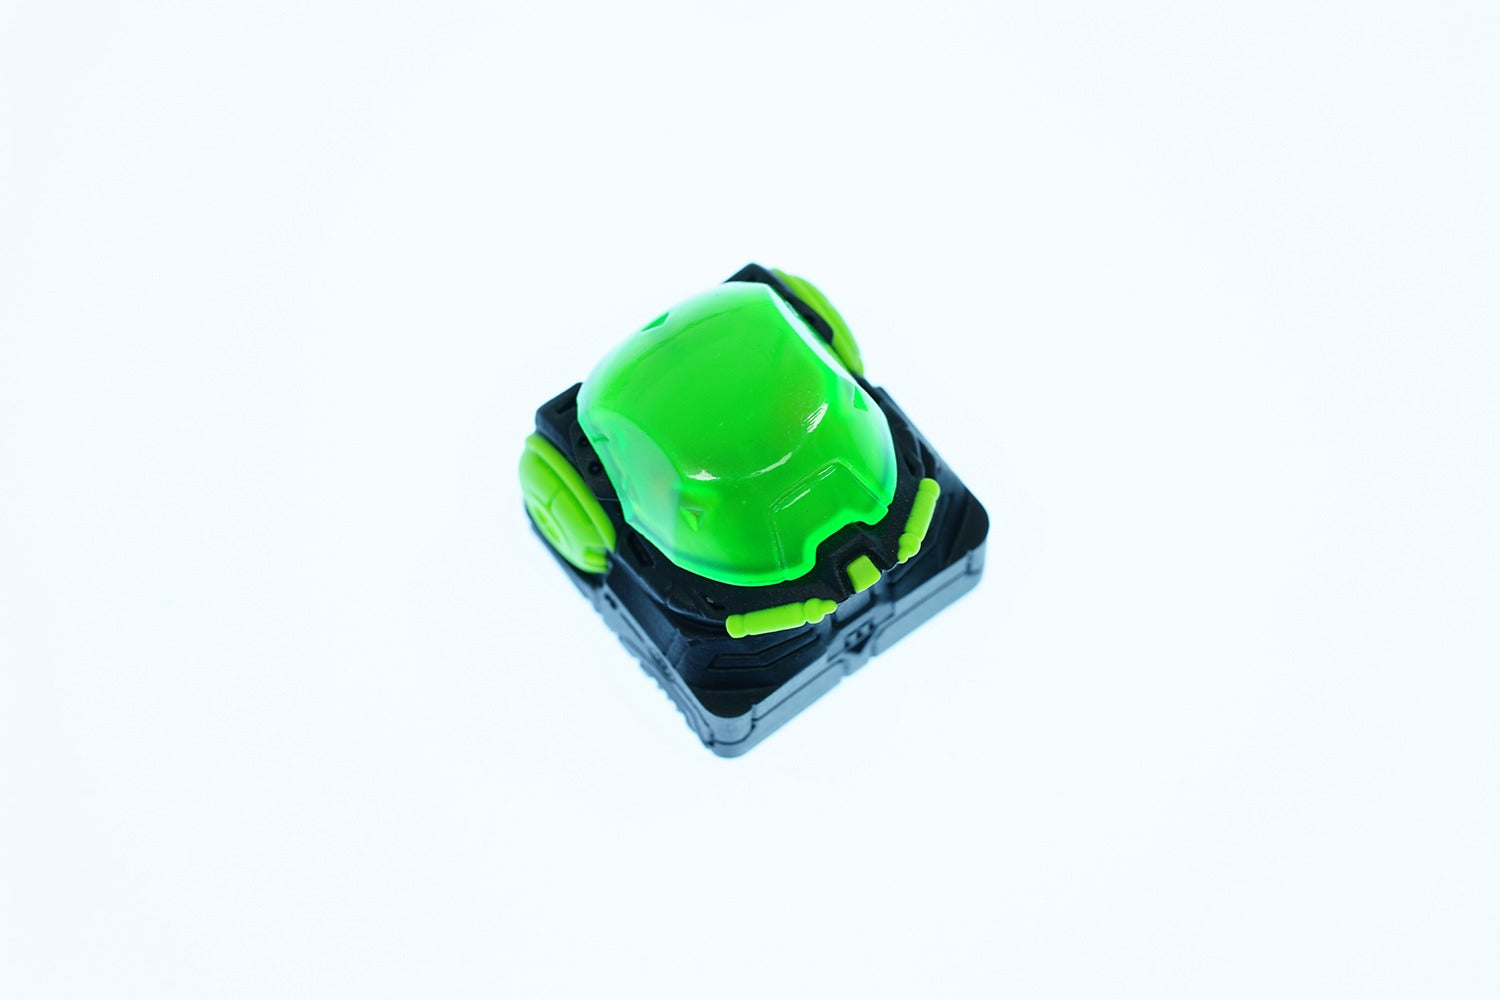 Hot Keys Project HKP Astronskull Green Poison Artisan Keycap MKK7E2XYXN |41730|